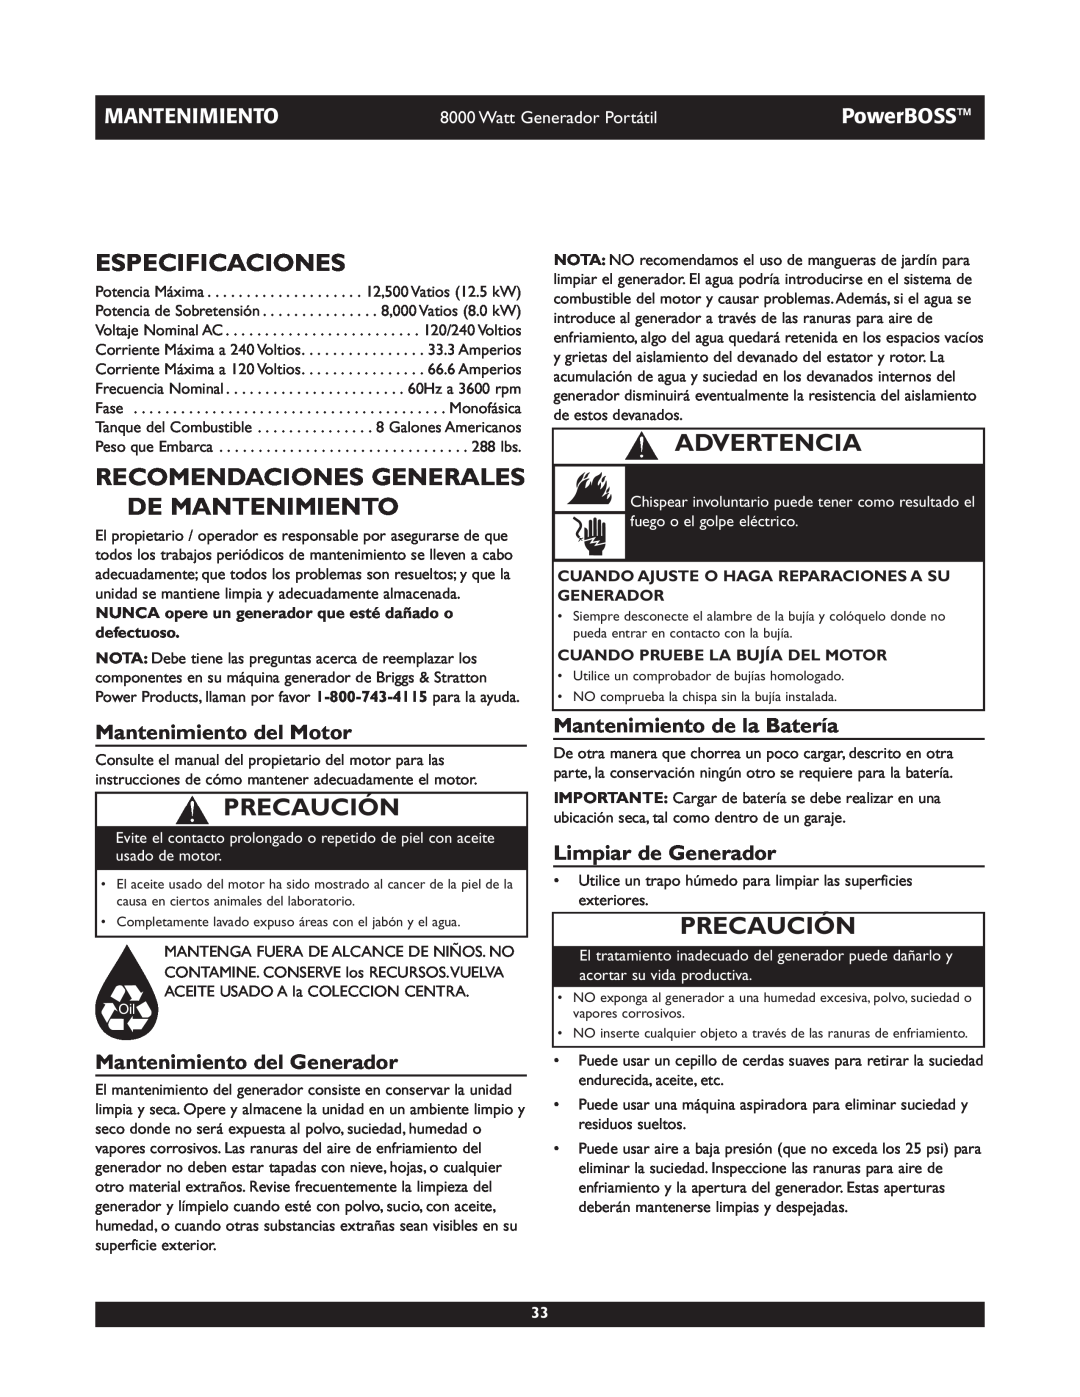 Briggs & Stratton 30228 Especificaciones, Recomendaciones Generales De Mantenimiento, Mantenimiento del Motor, Advertencia 